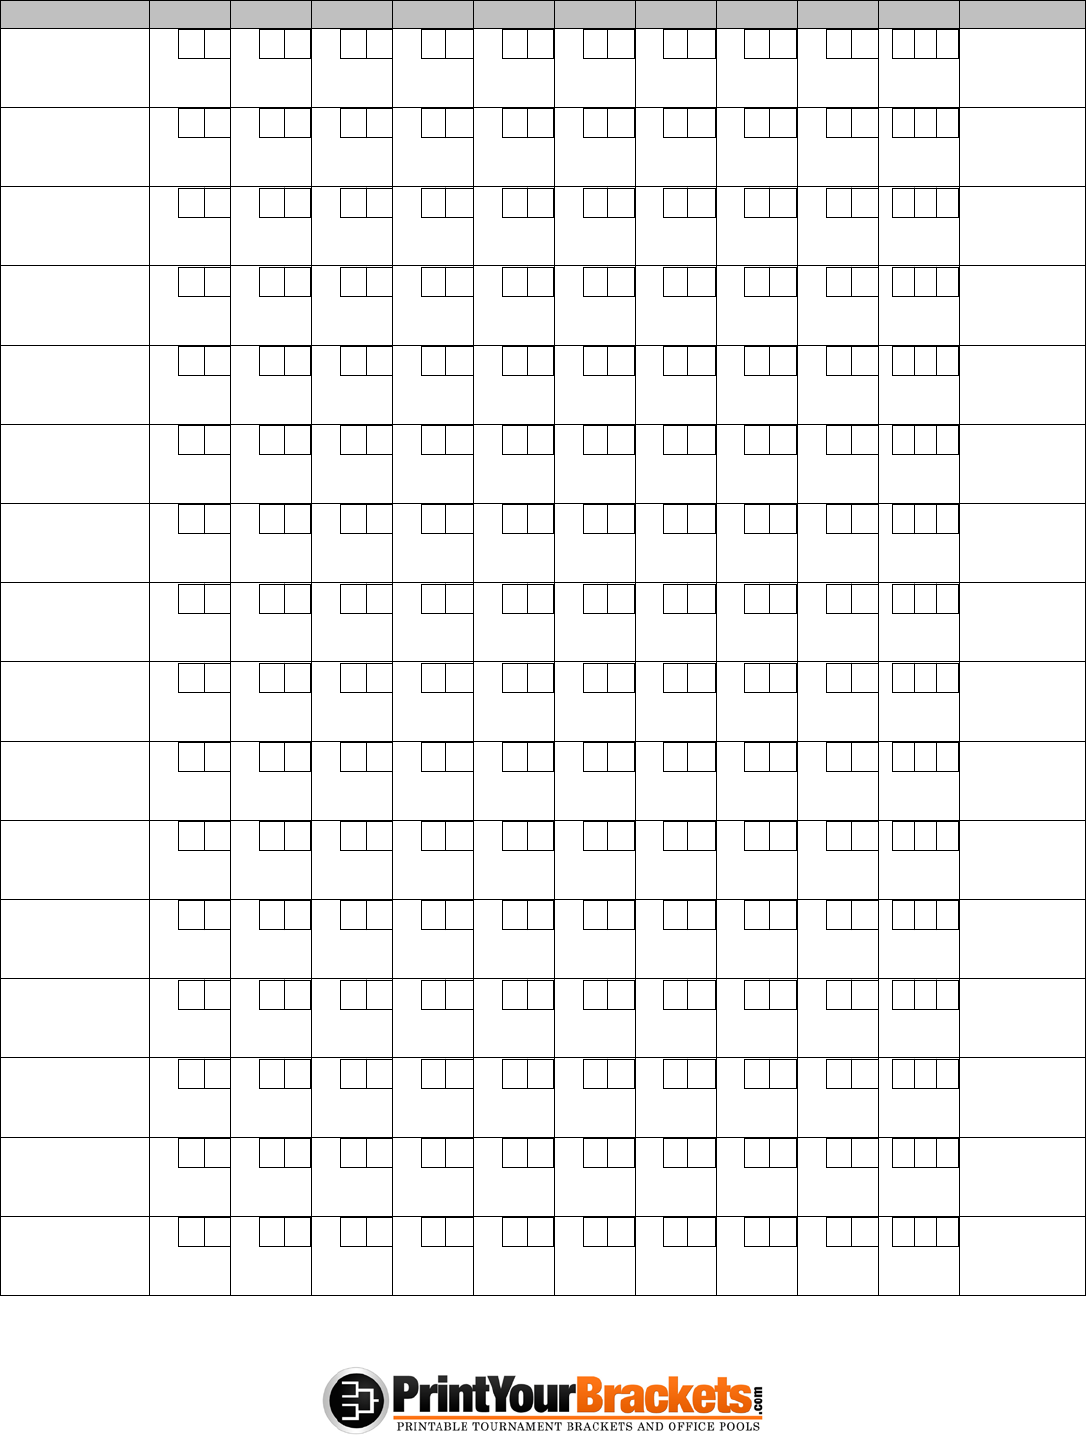 Bowling Score Sheet 2